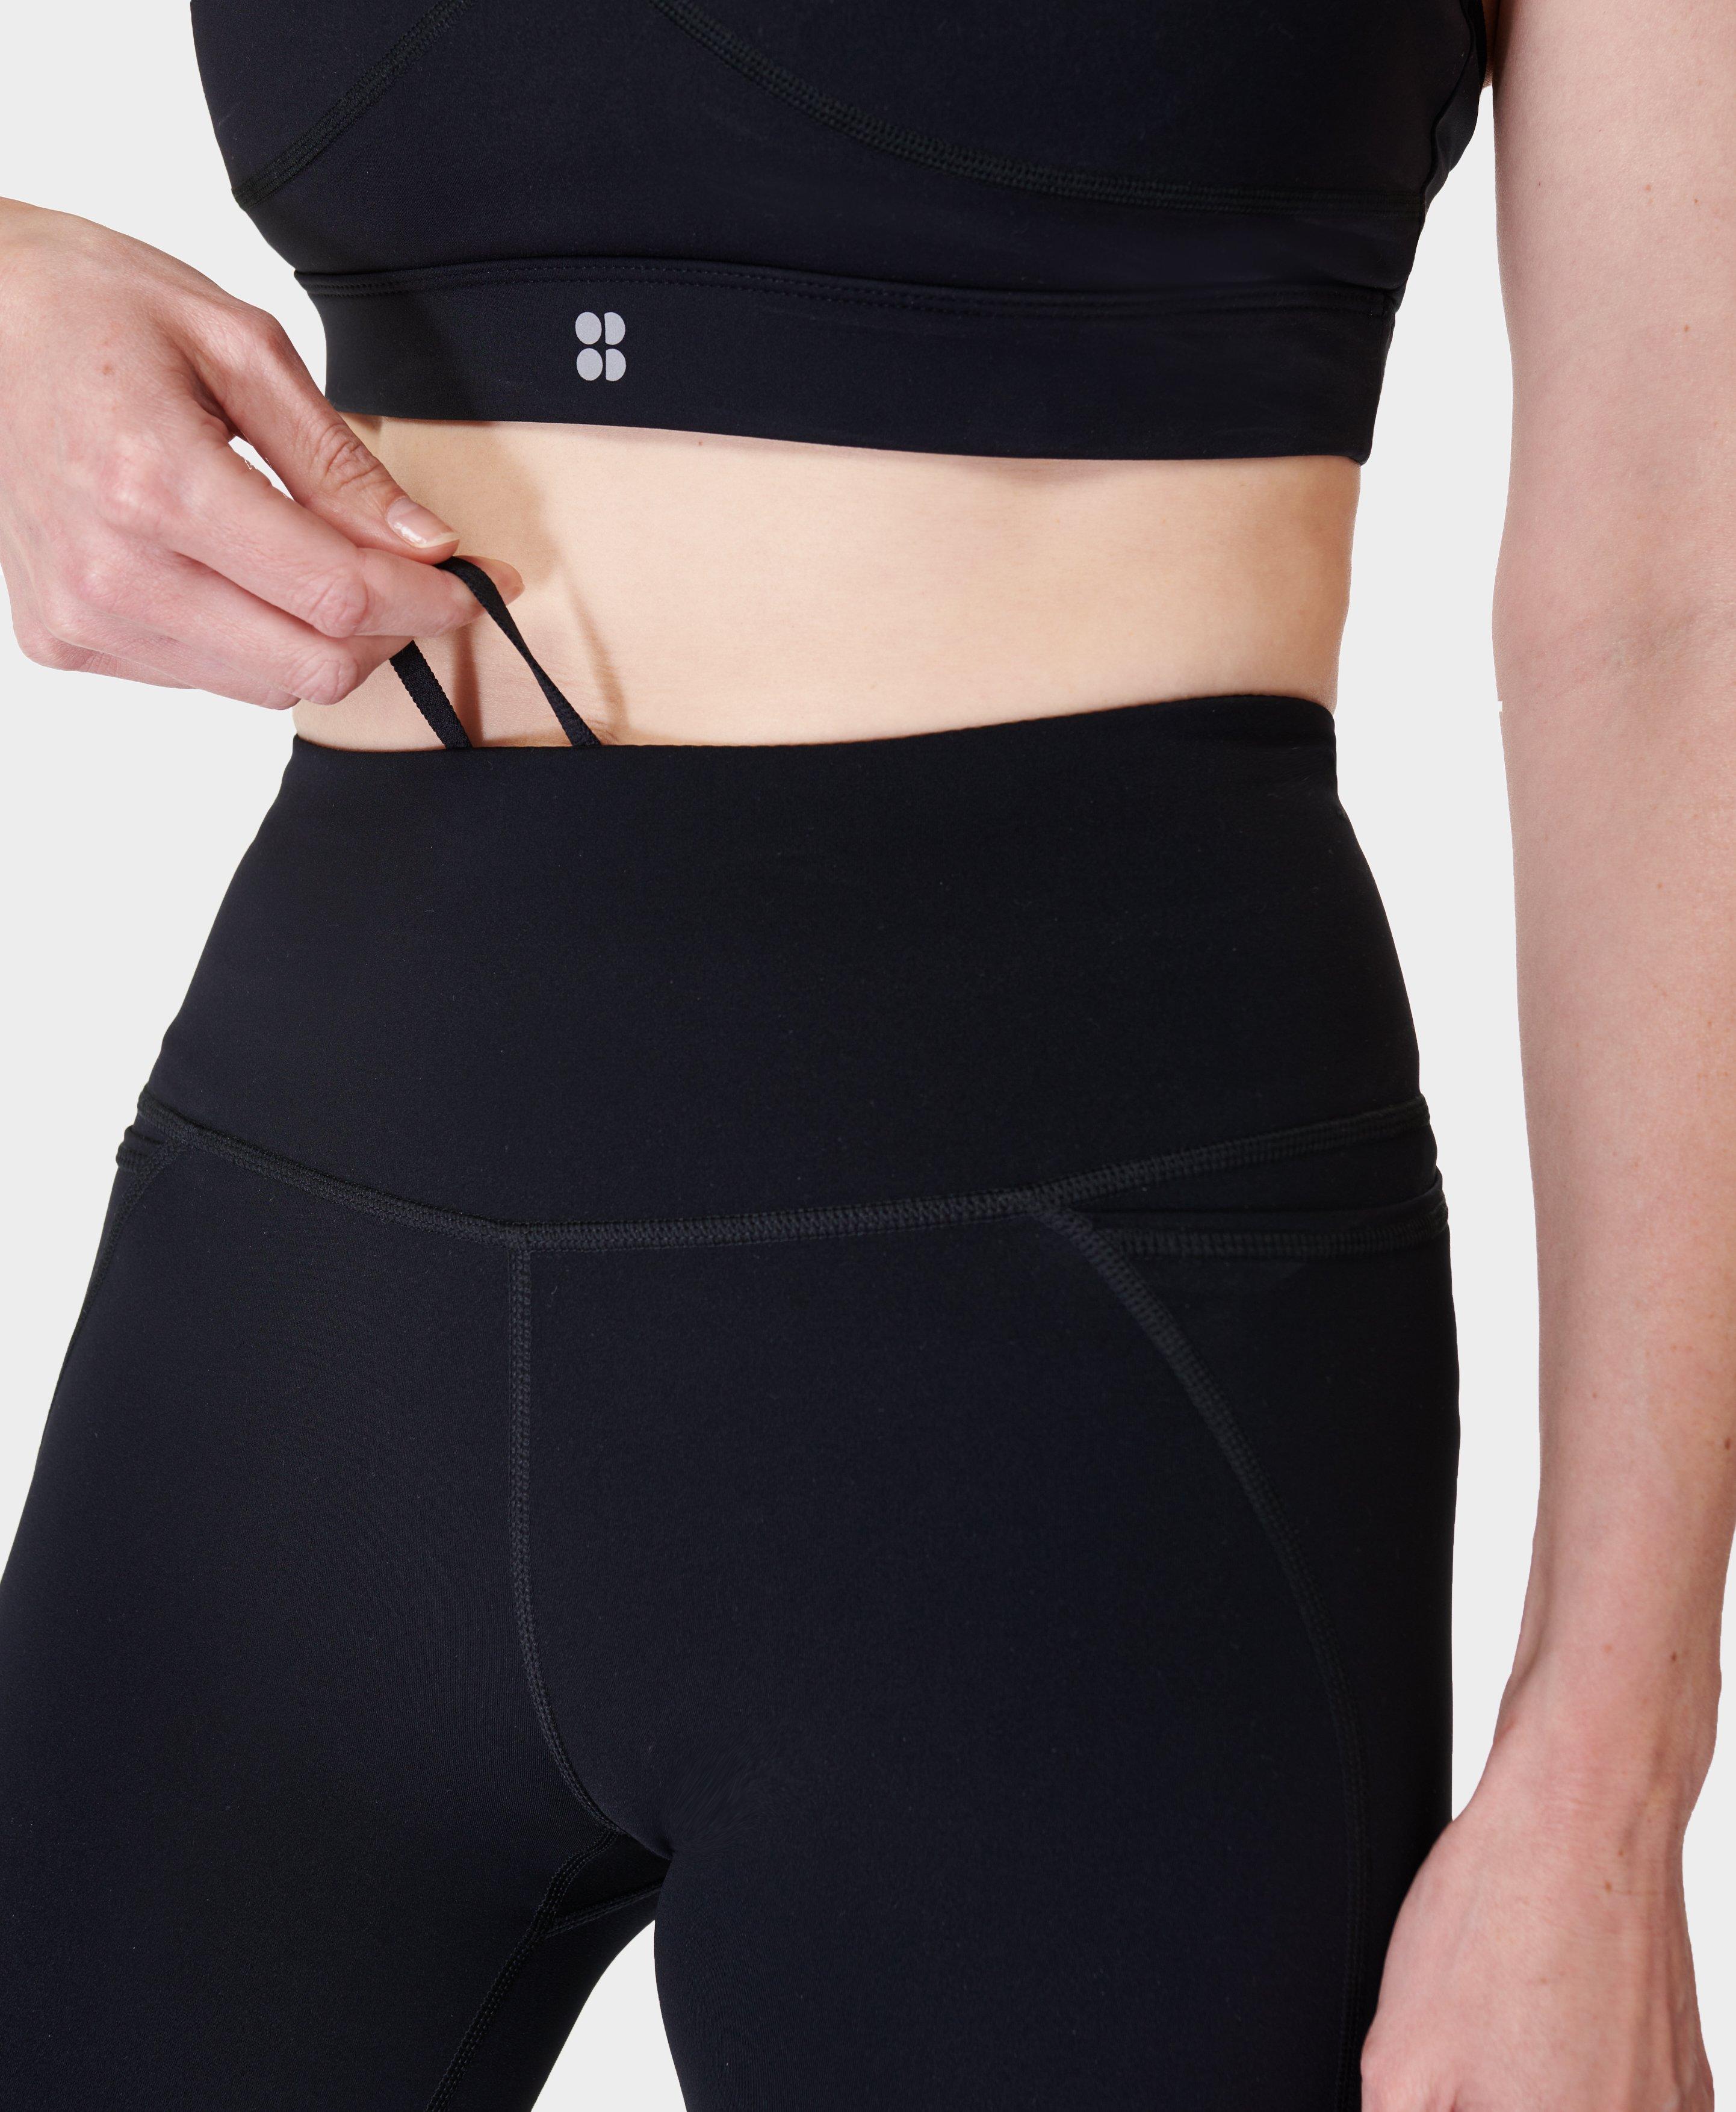 Power Bootcut Workout Pants - Black, Women's Pants